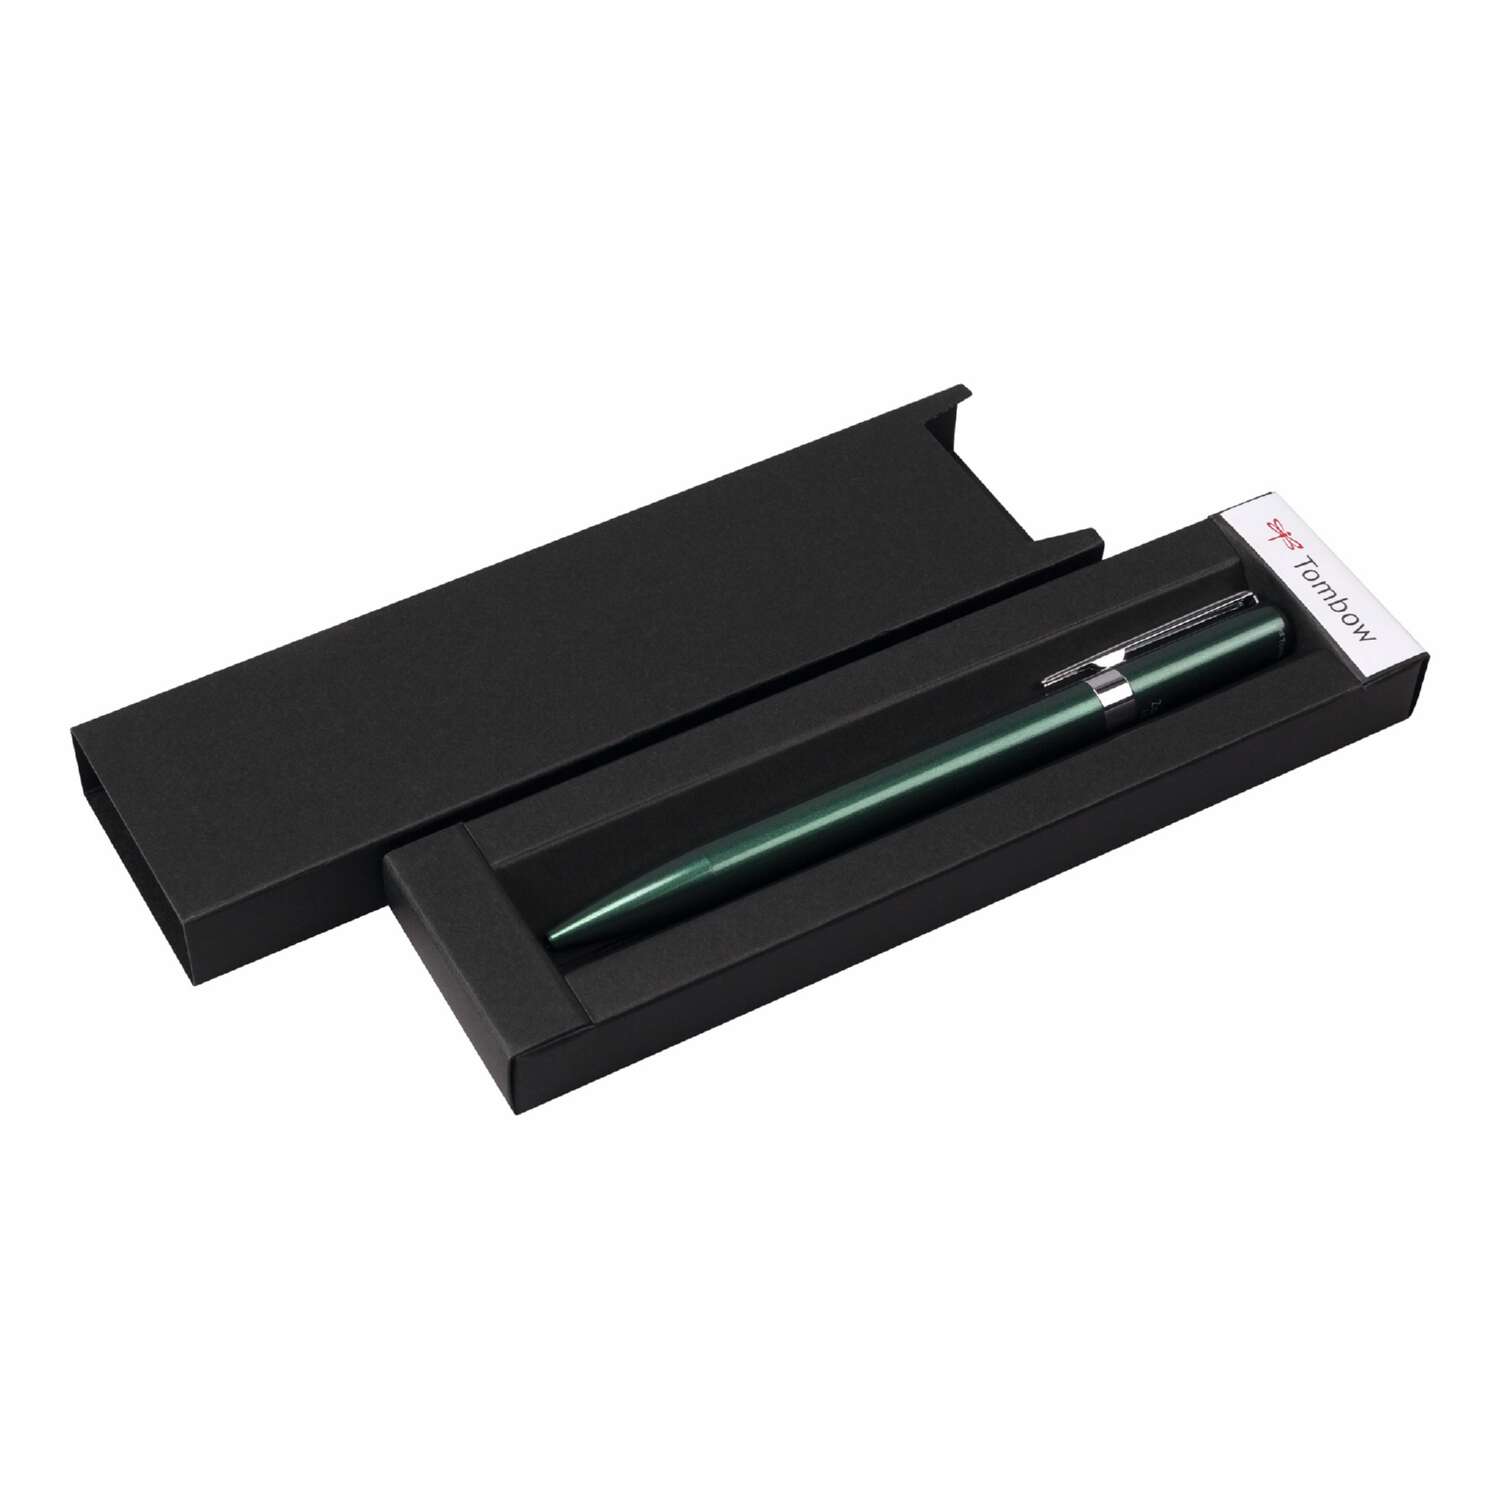 Ручка шариковая Tombow ZOOM L105 City черная корпус зеленый линия 0.7 мм подарочная упаковка - фото 1